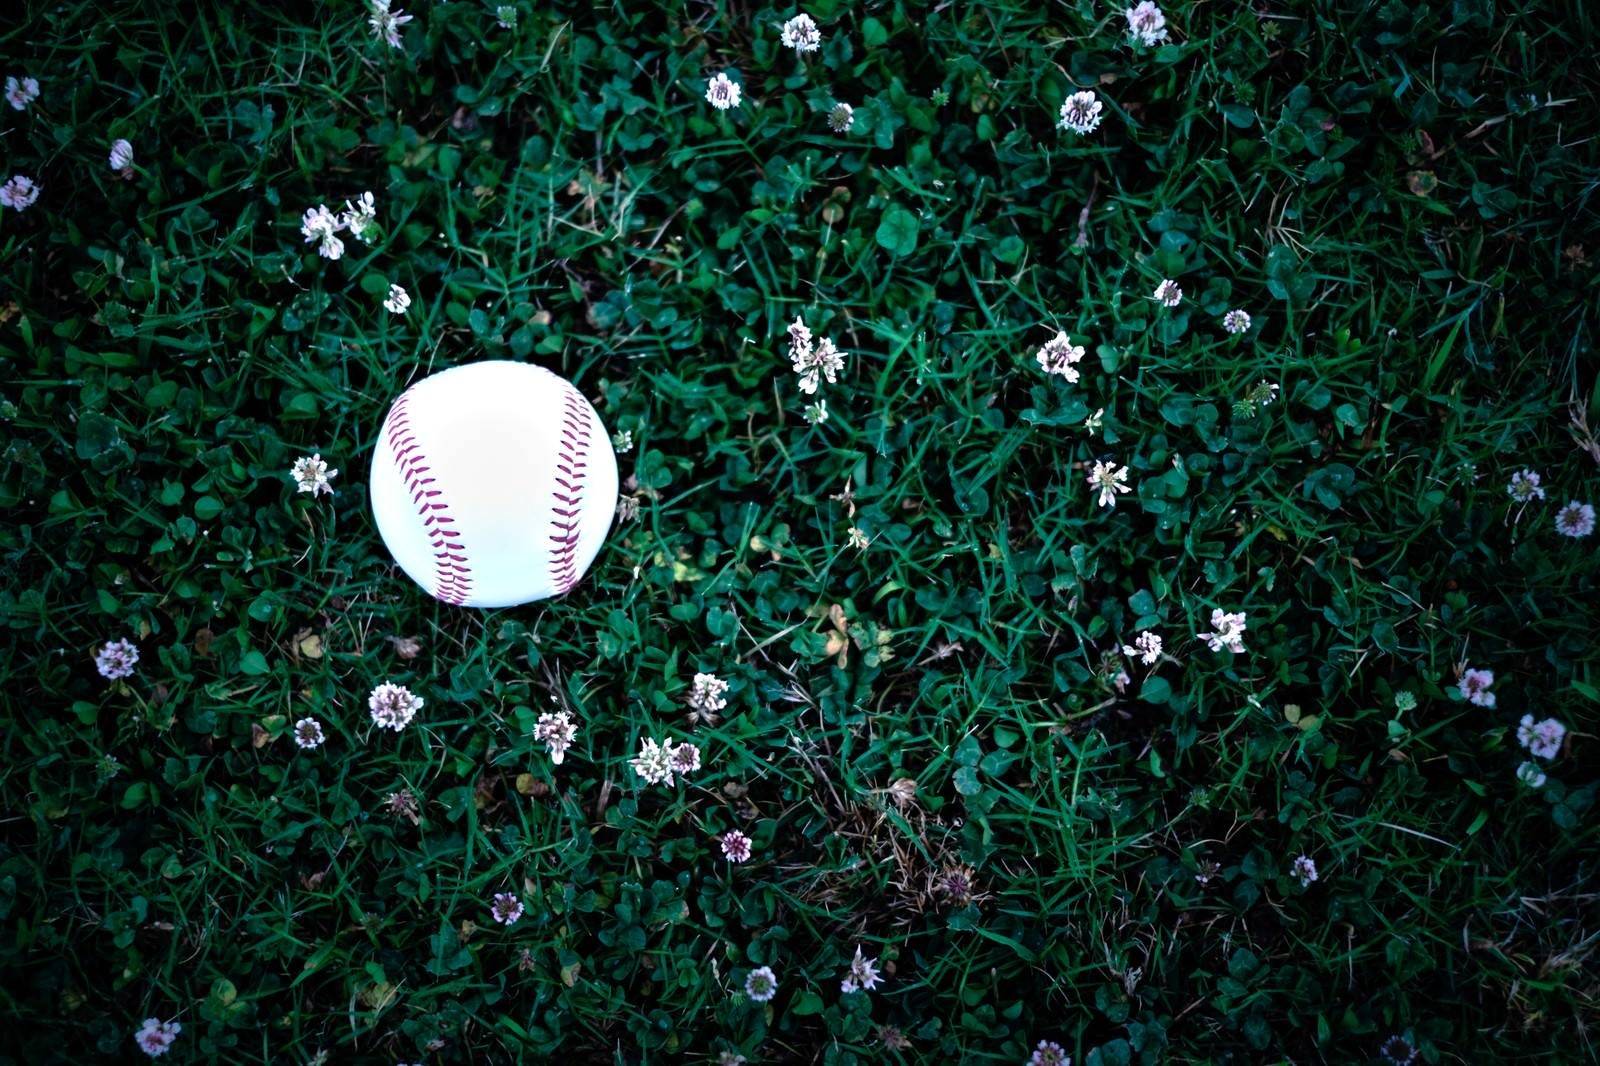 「野原に転が野球のボール」の写真